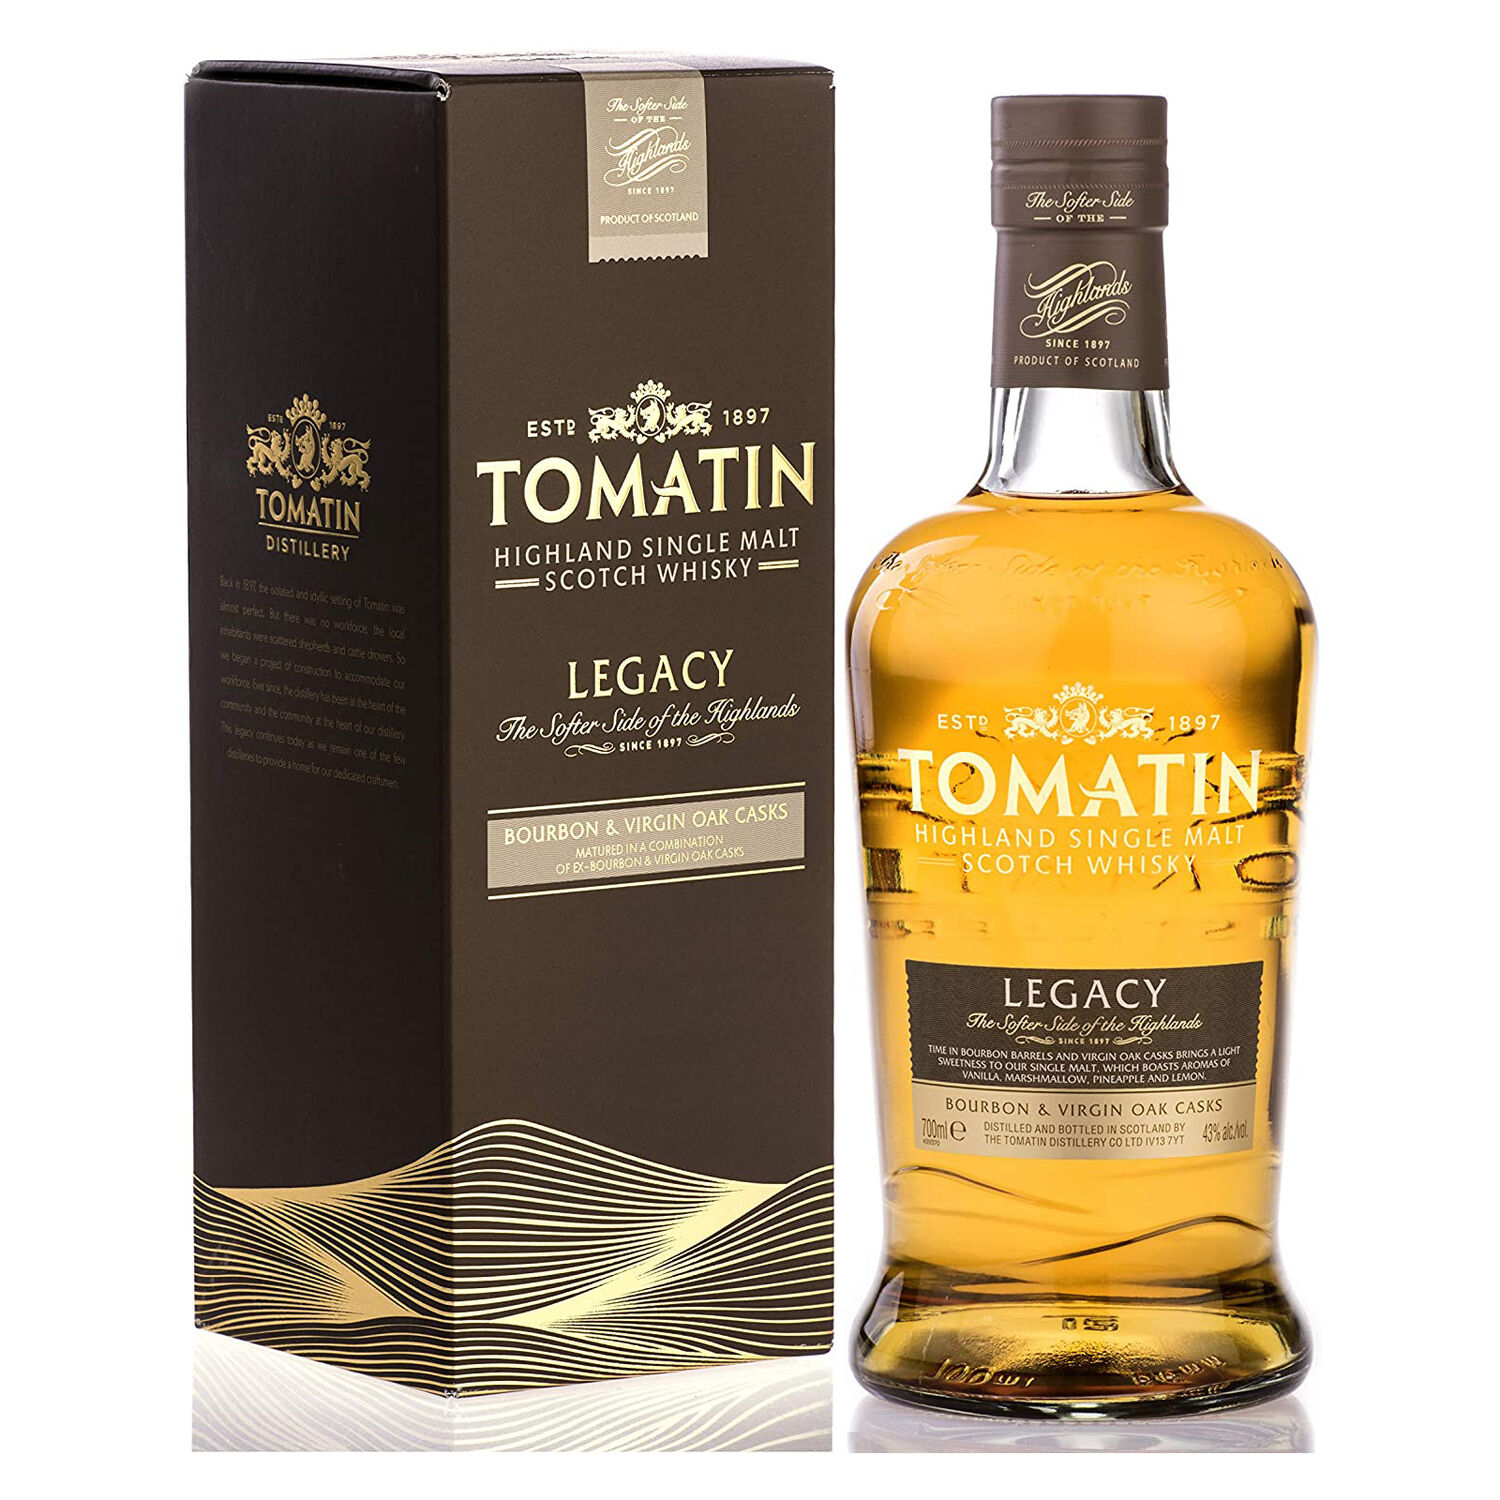 Tomatin Legacy Highland Single Malt Scotch Whisky (70cl) only